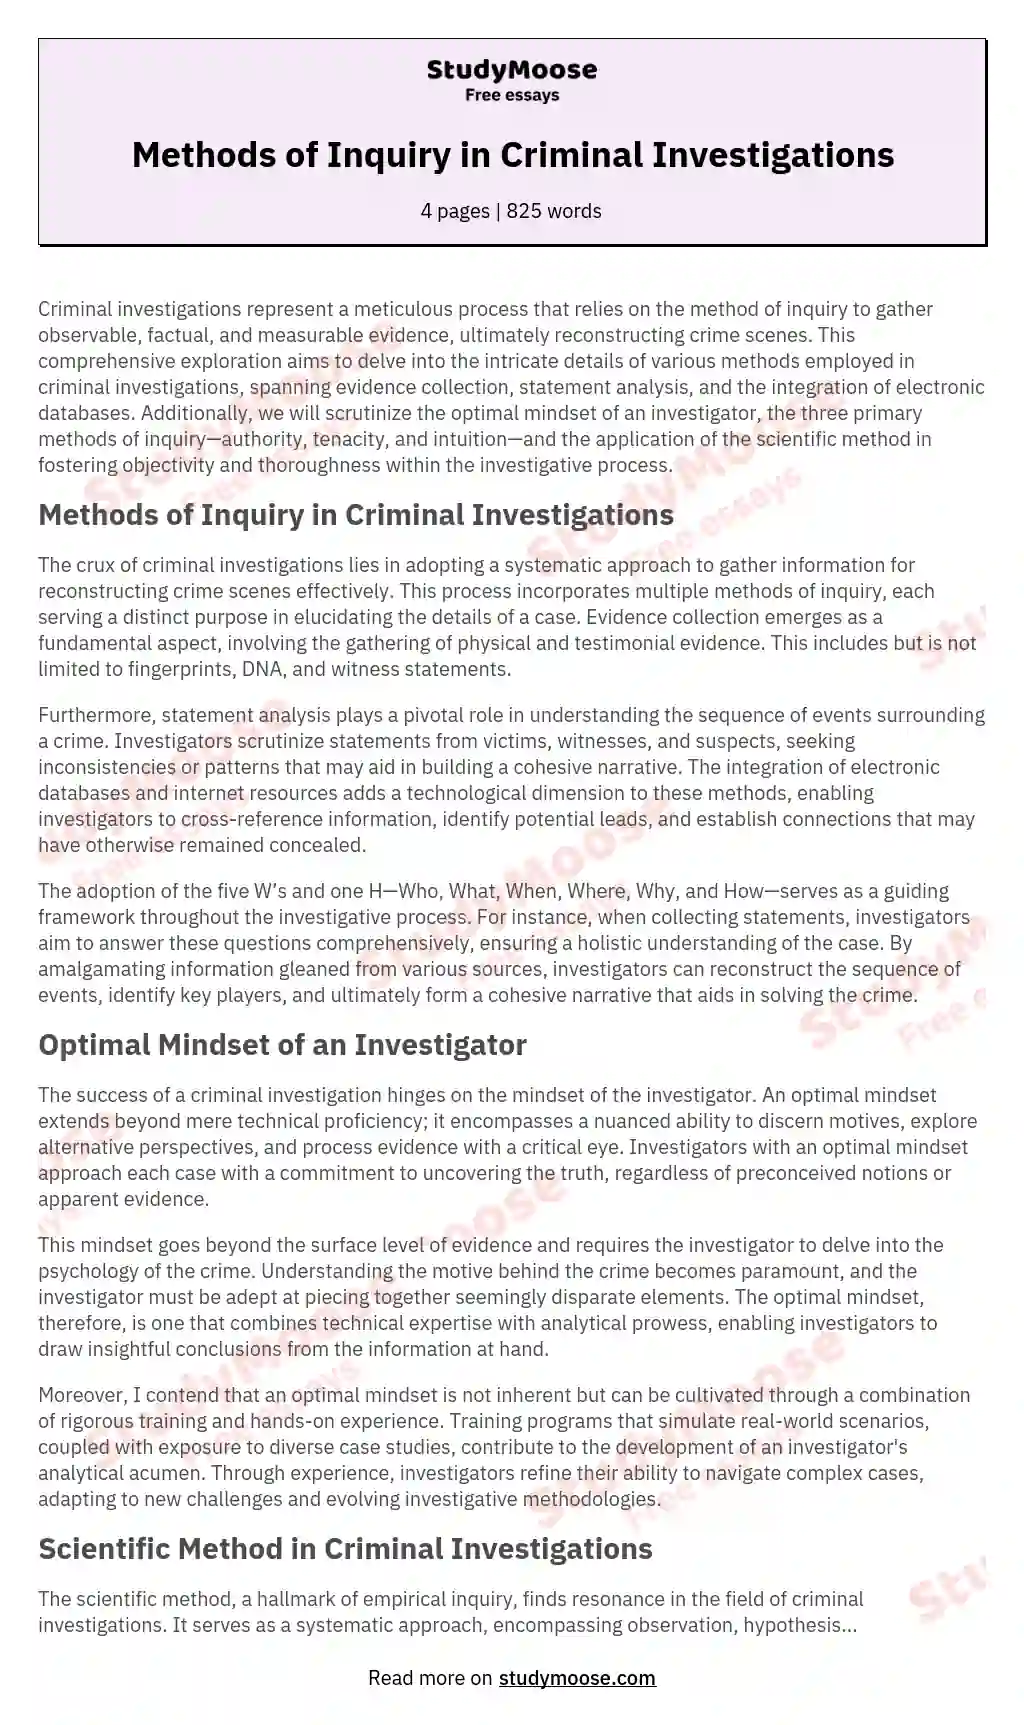 Methods of Inquiry in Criminal Investigations essay